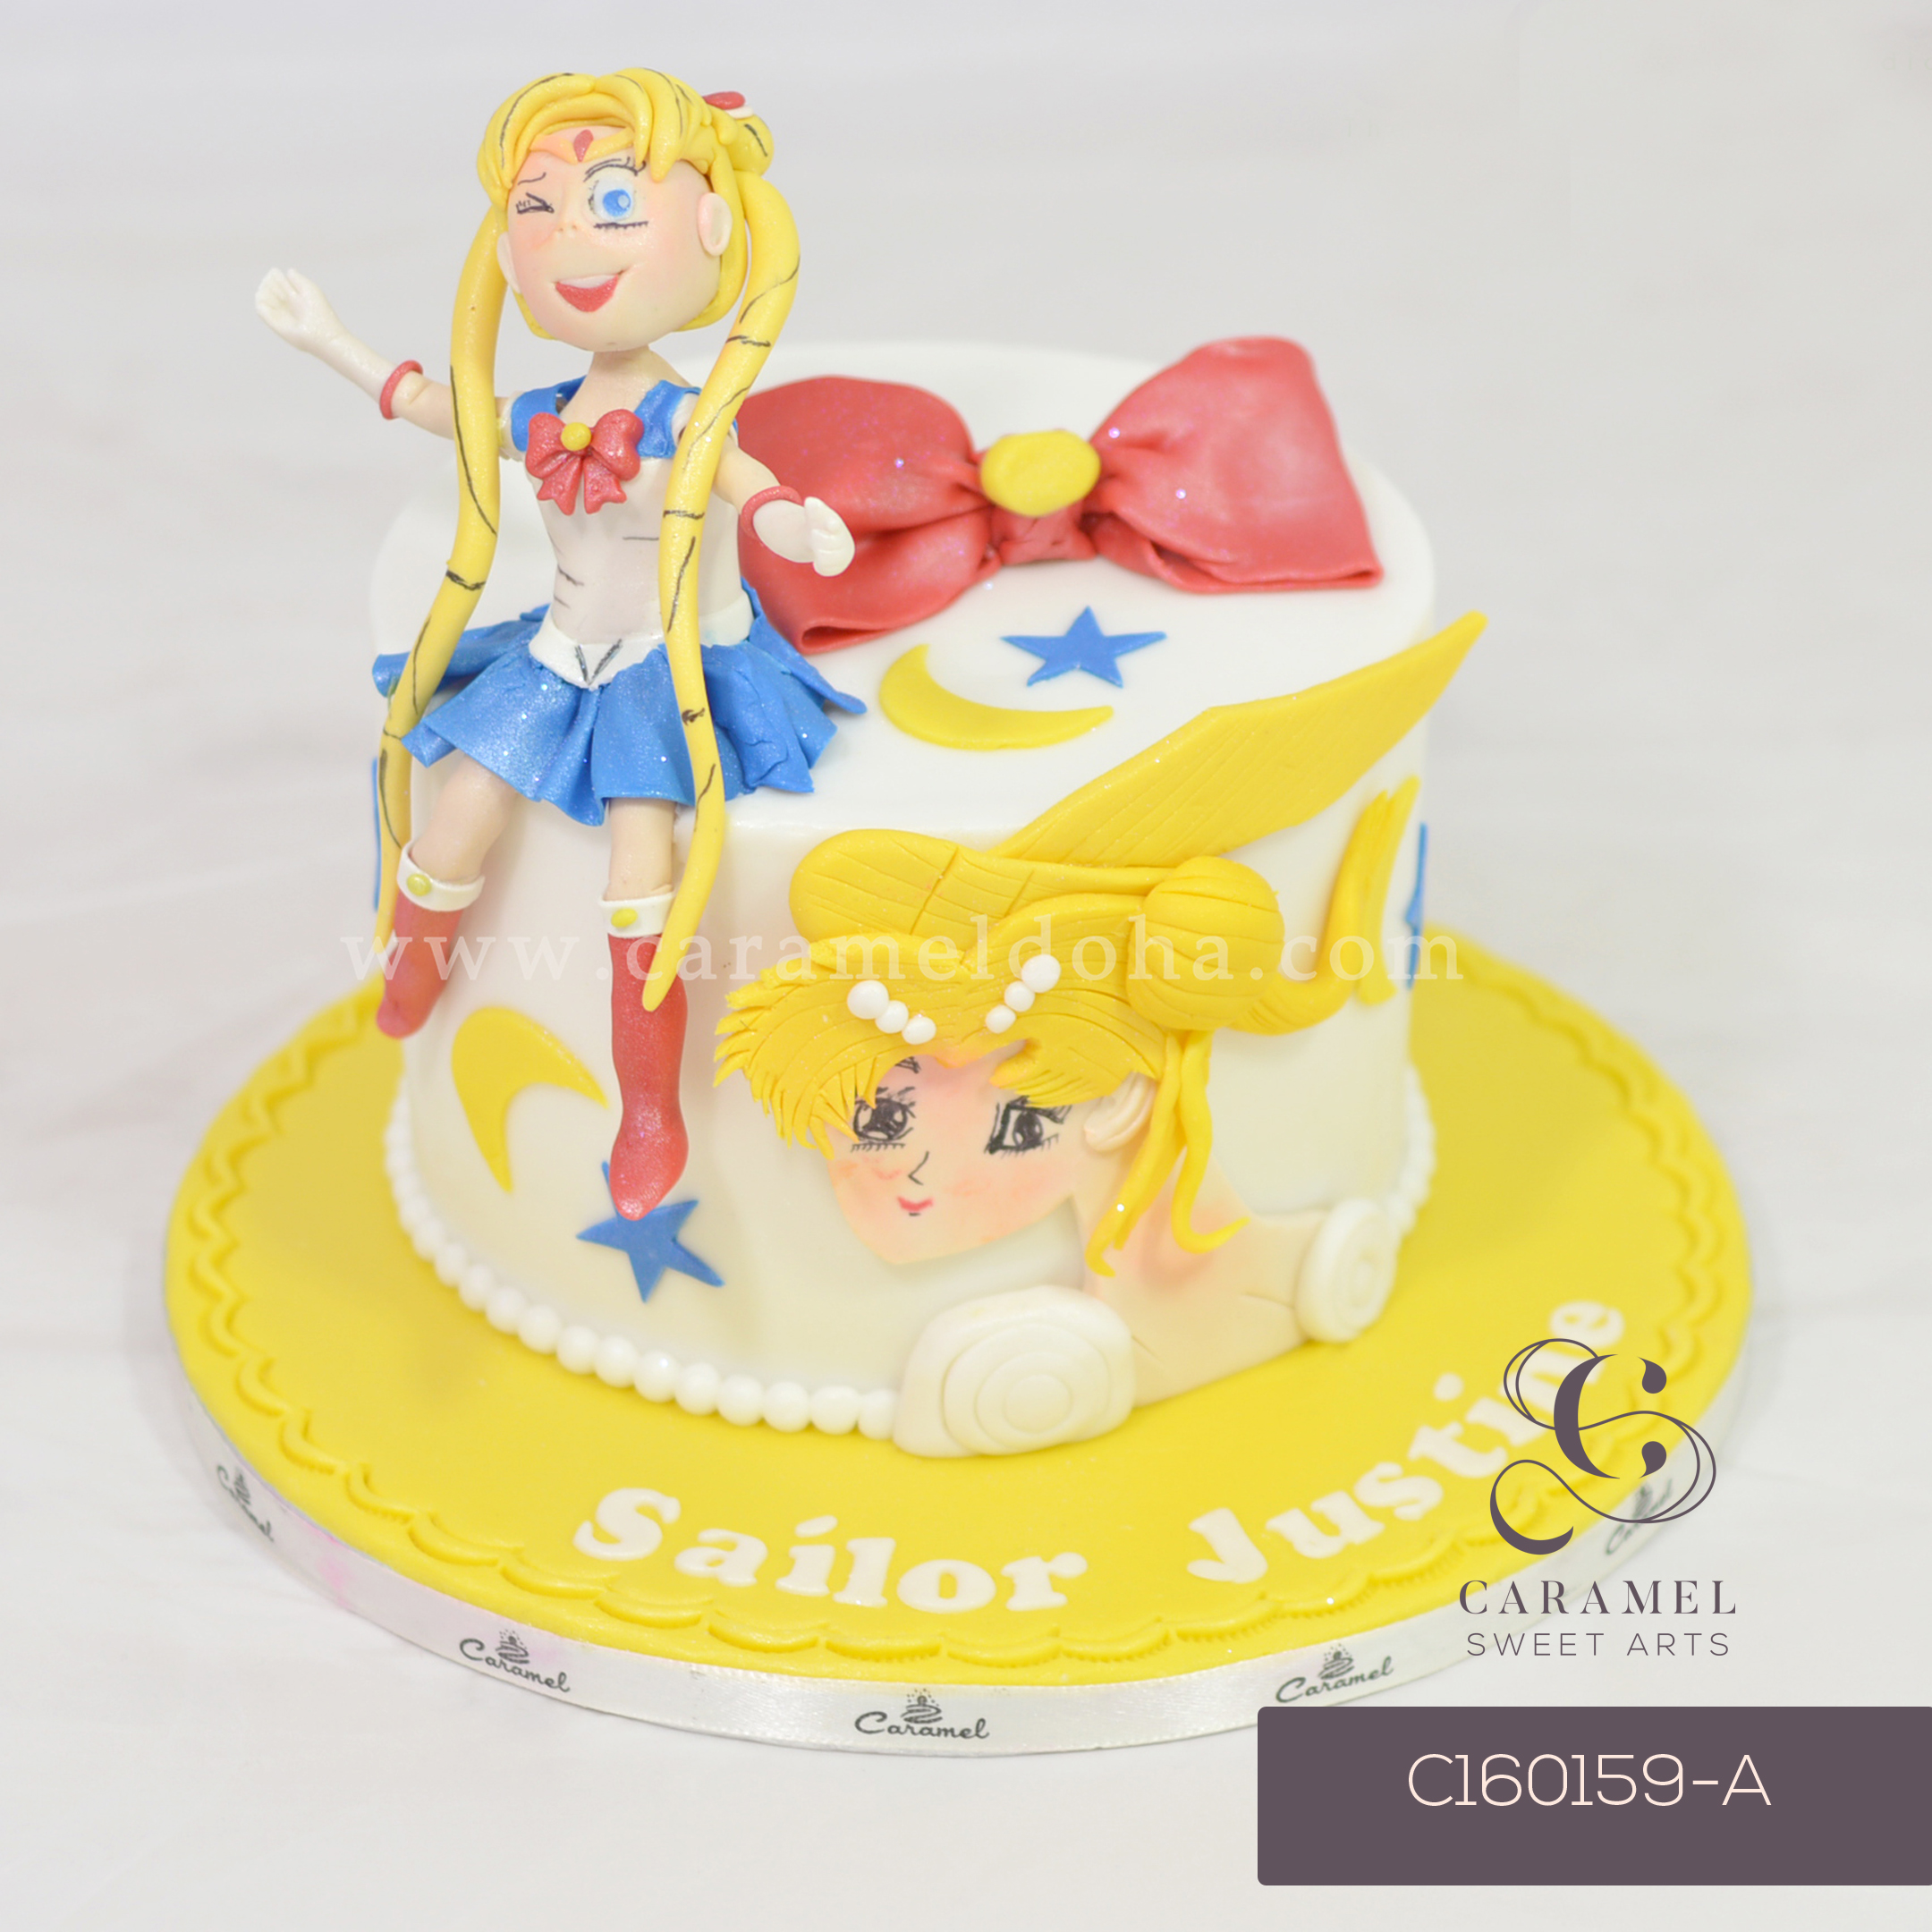 Sailor Moon Cake – Caramel Sweet Arts